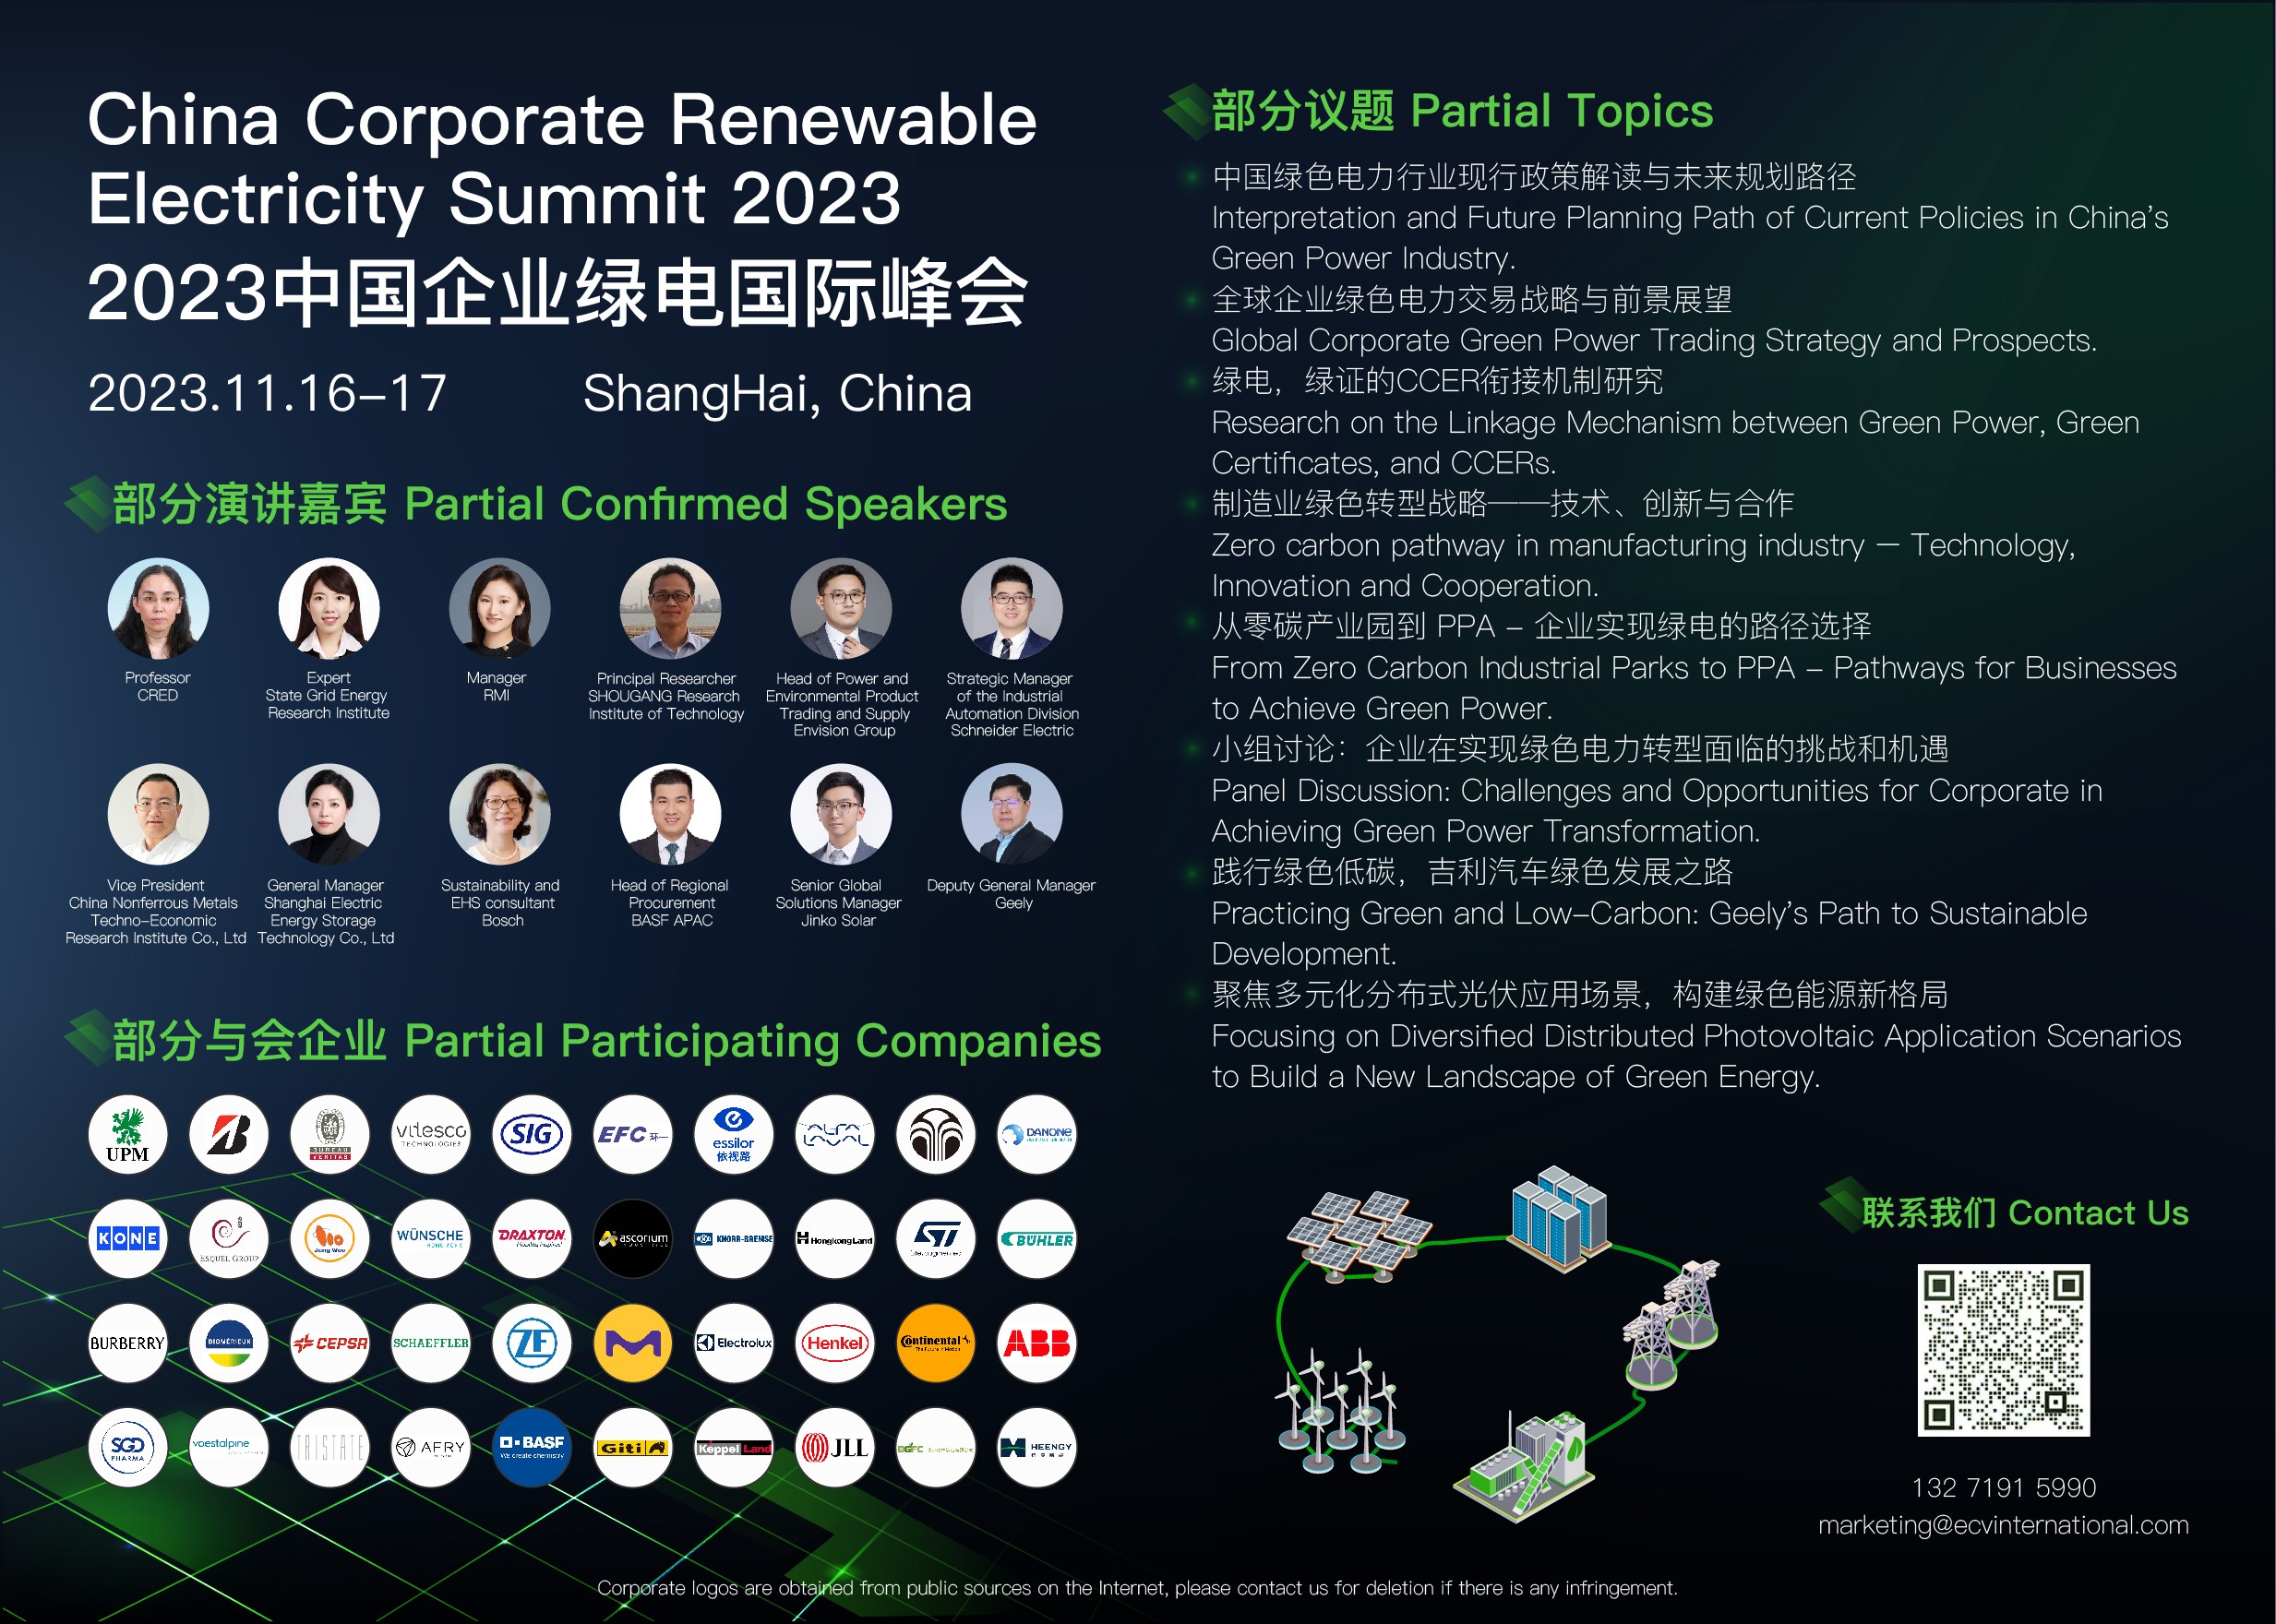 2023年中国企业可再生能源电力峰会：引领绿色电力转型